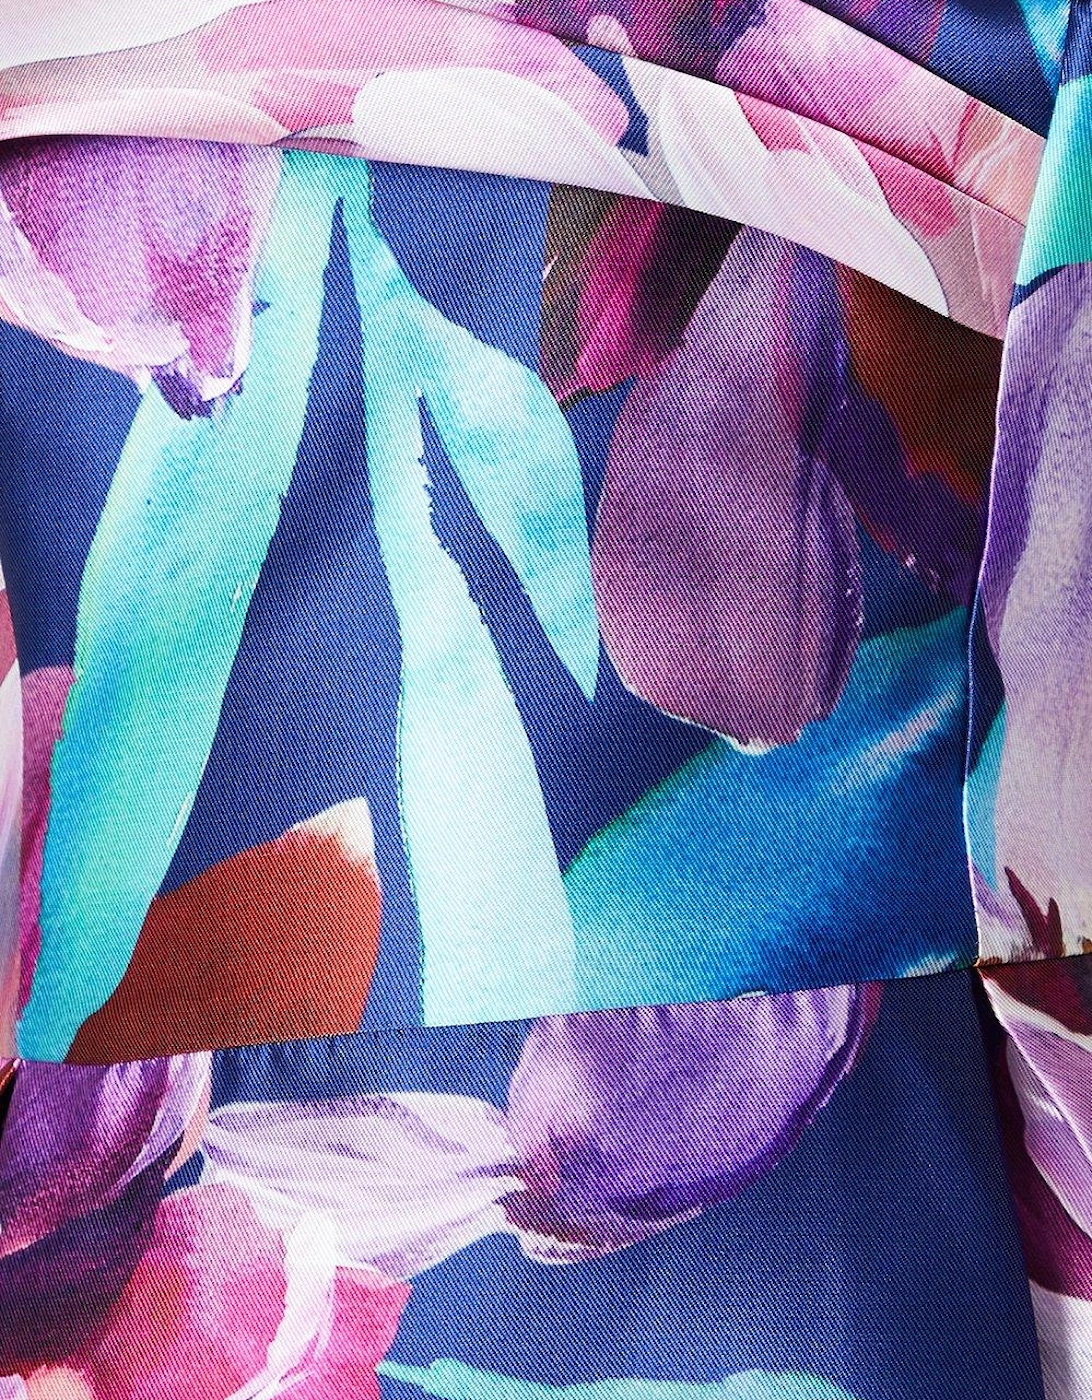 Bardot Pleat Detail Floral Print Midi Dress